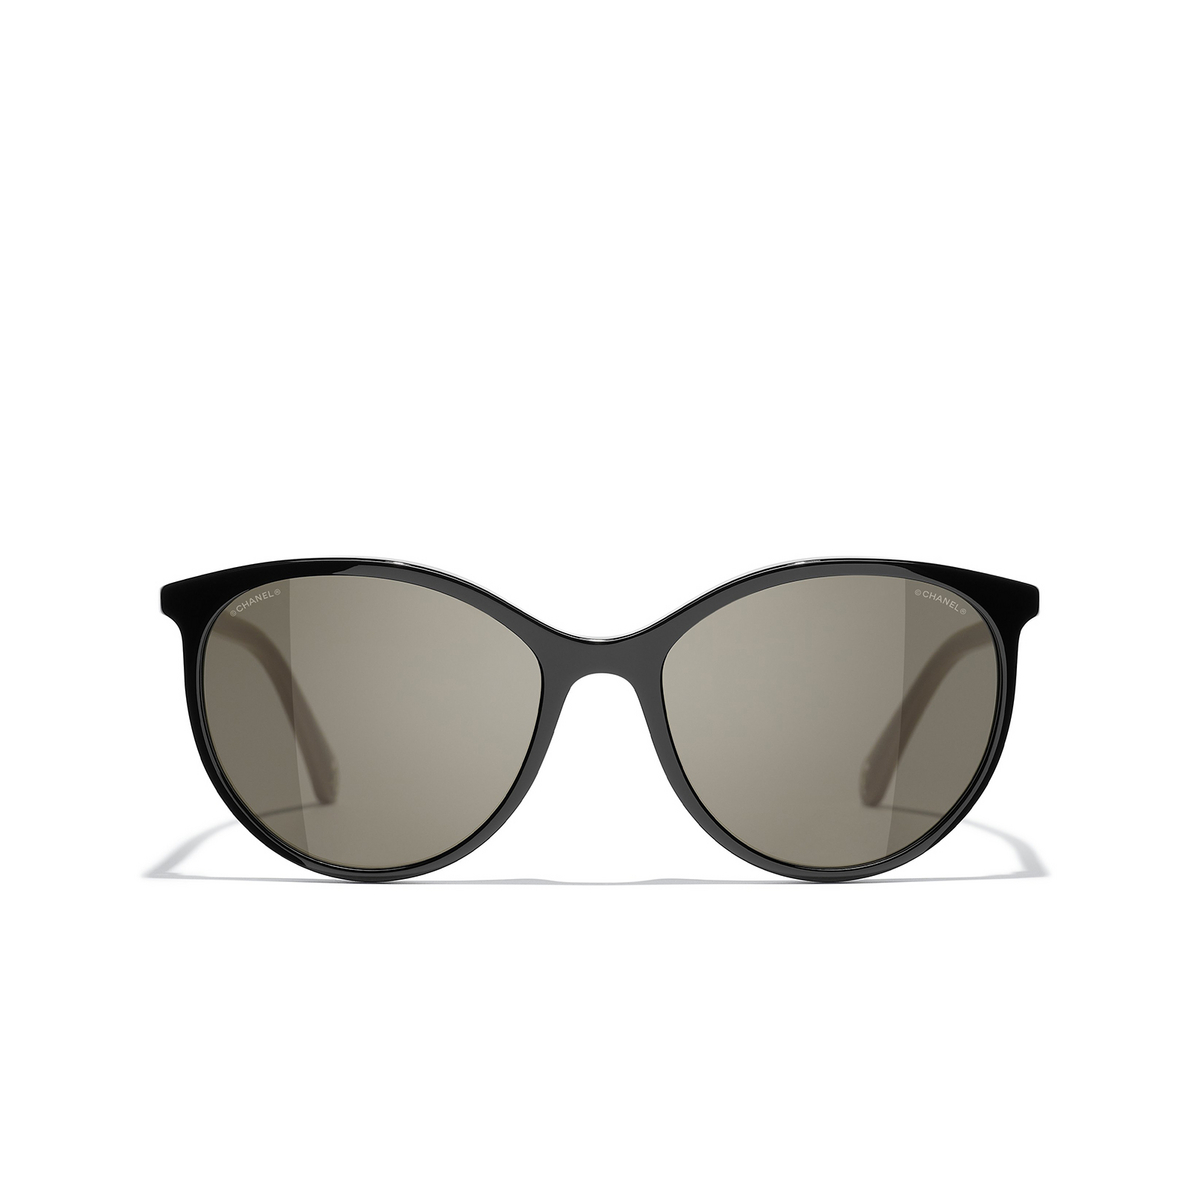 CHANEL pantos Sunglasses C942/3 Black & Beige - front view